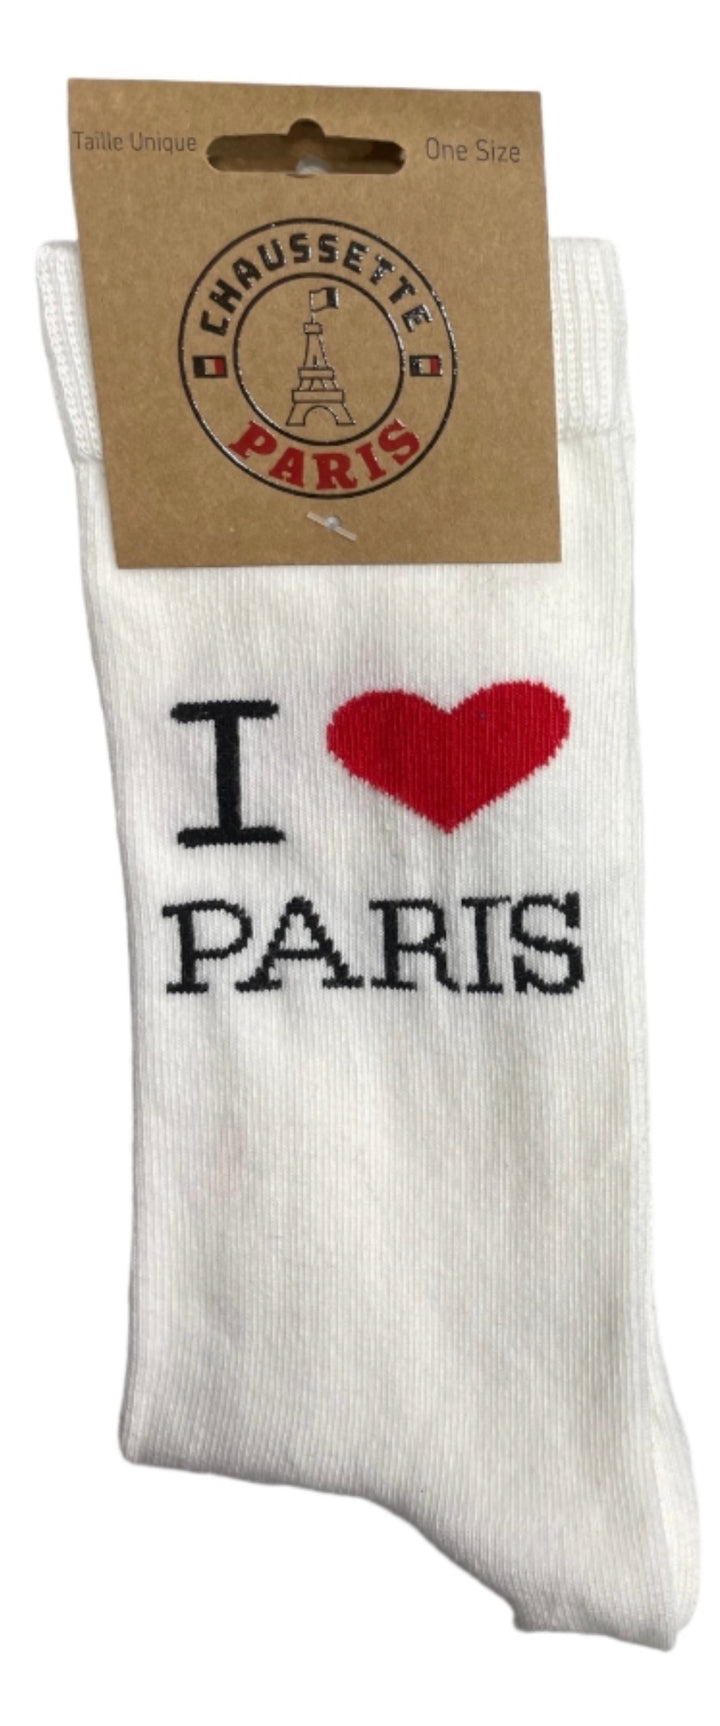 Paire de chaussette I LOVE PARIS noir ou Blanche